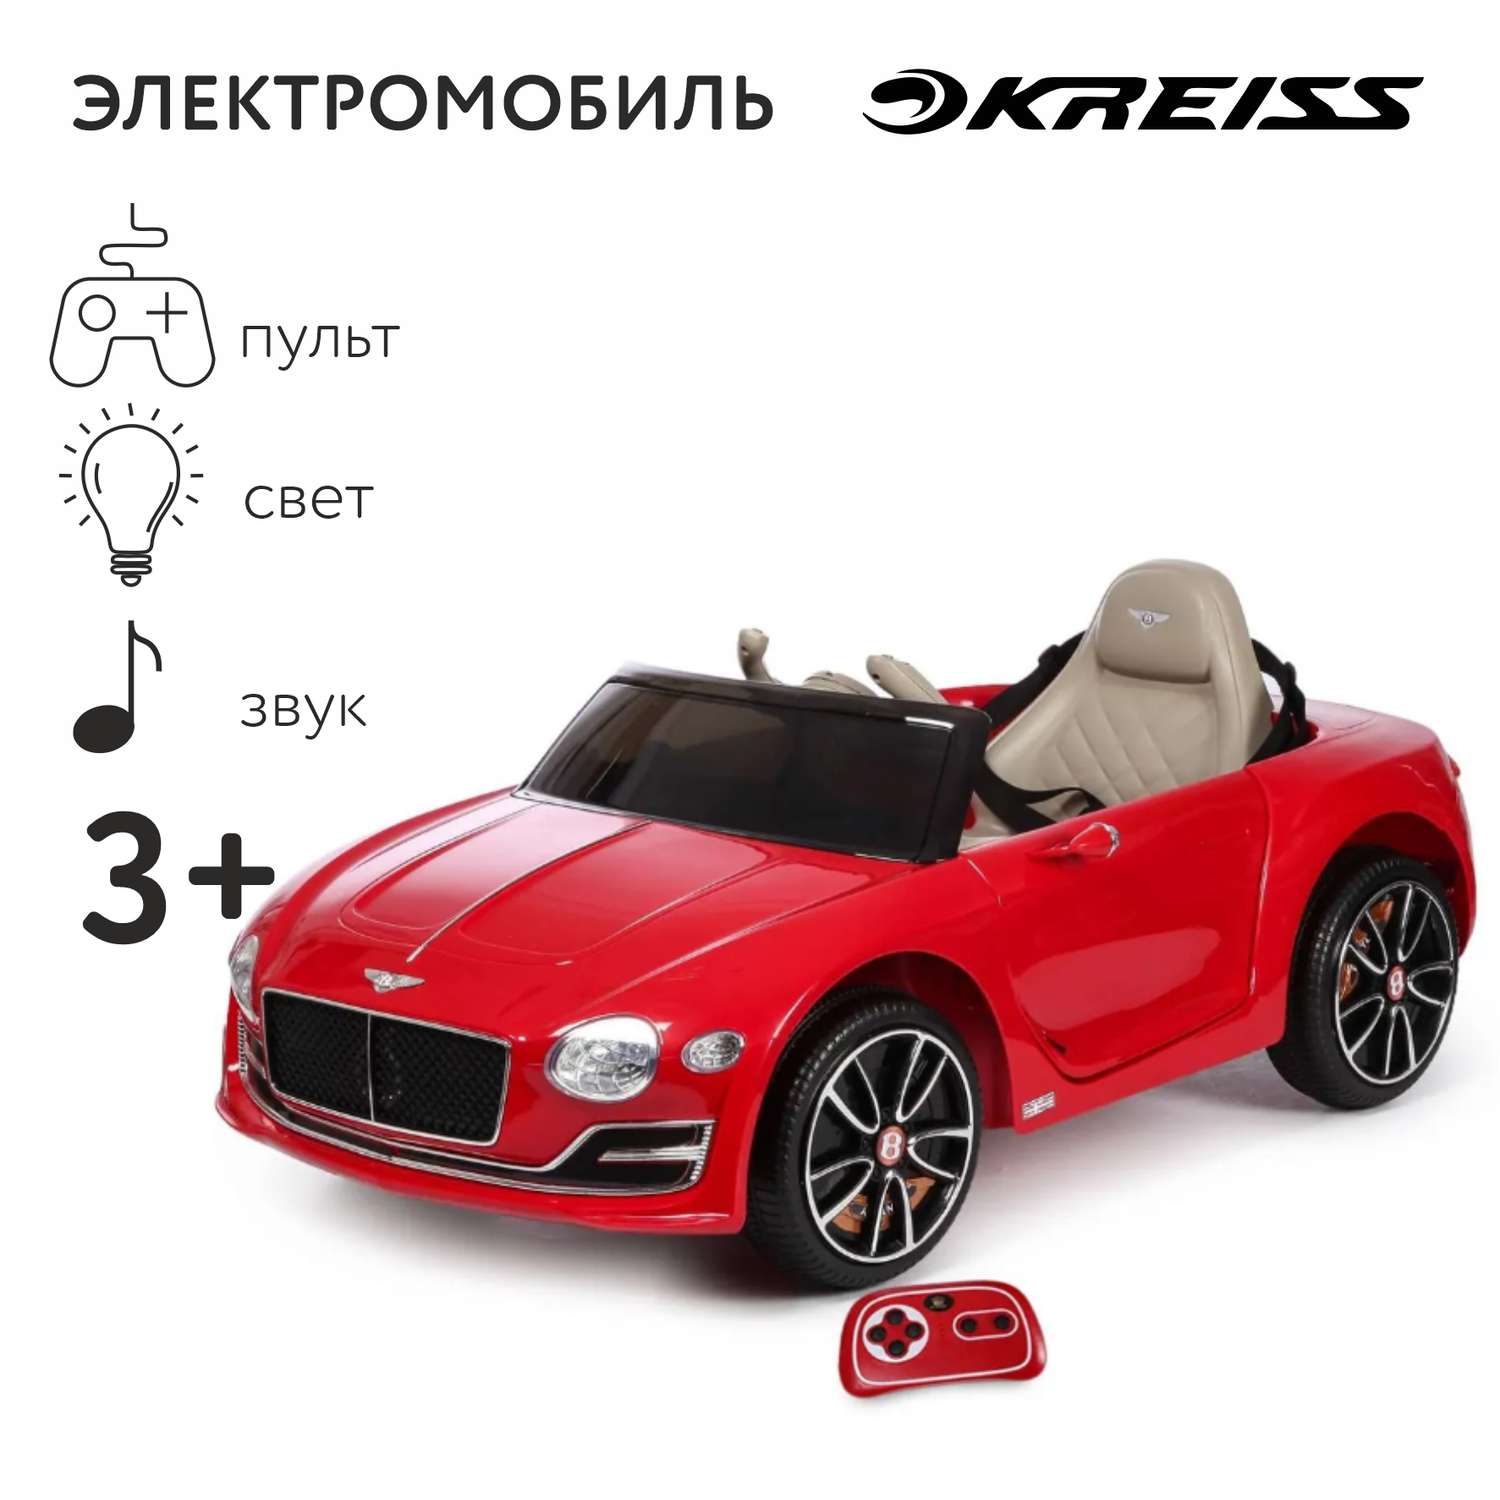 Электромобиль Kreiss РУ Bentley Exp12 Sped 6E Concept - фото 1